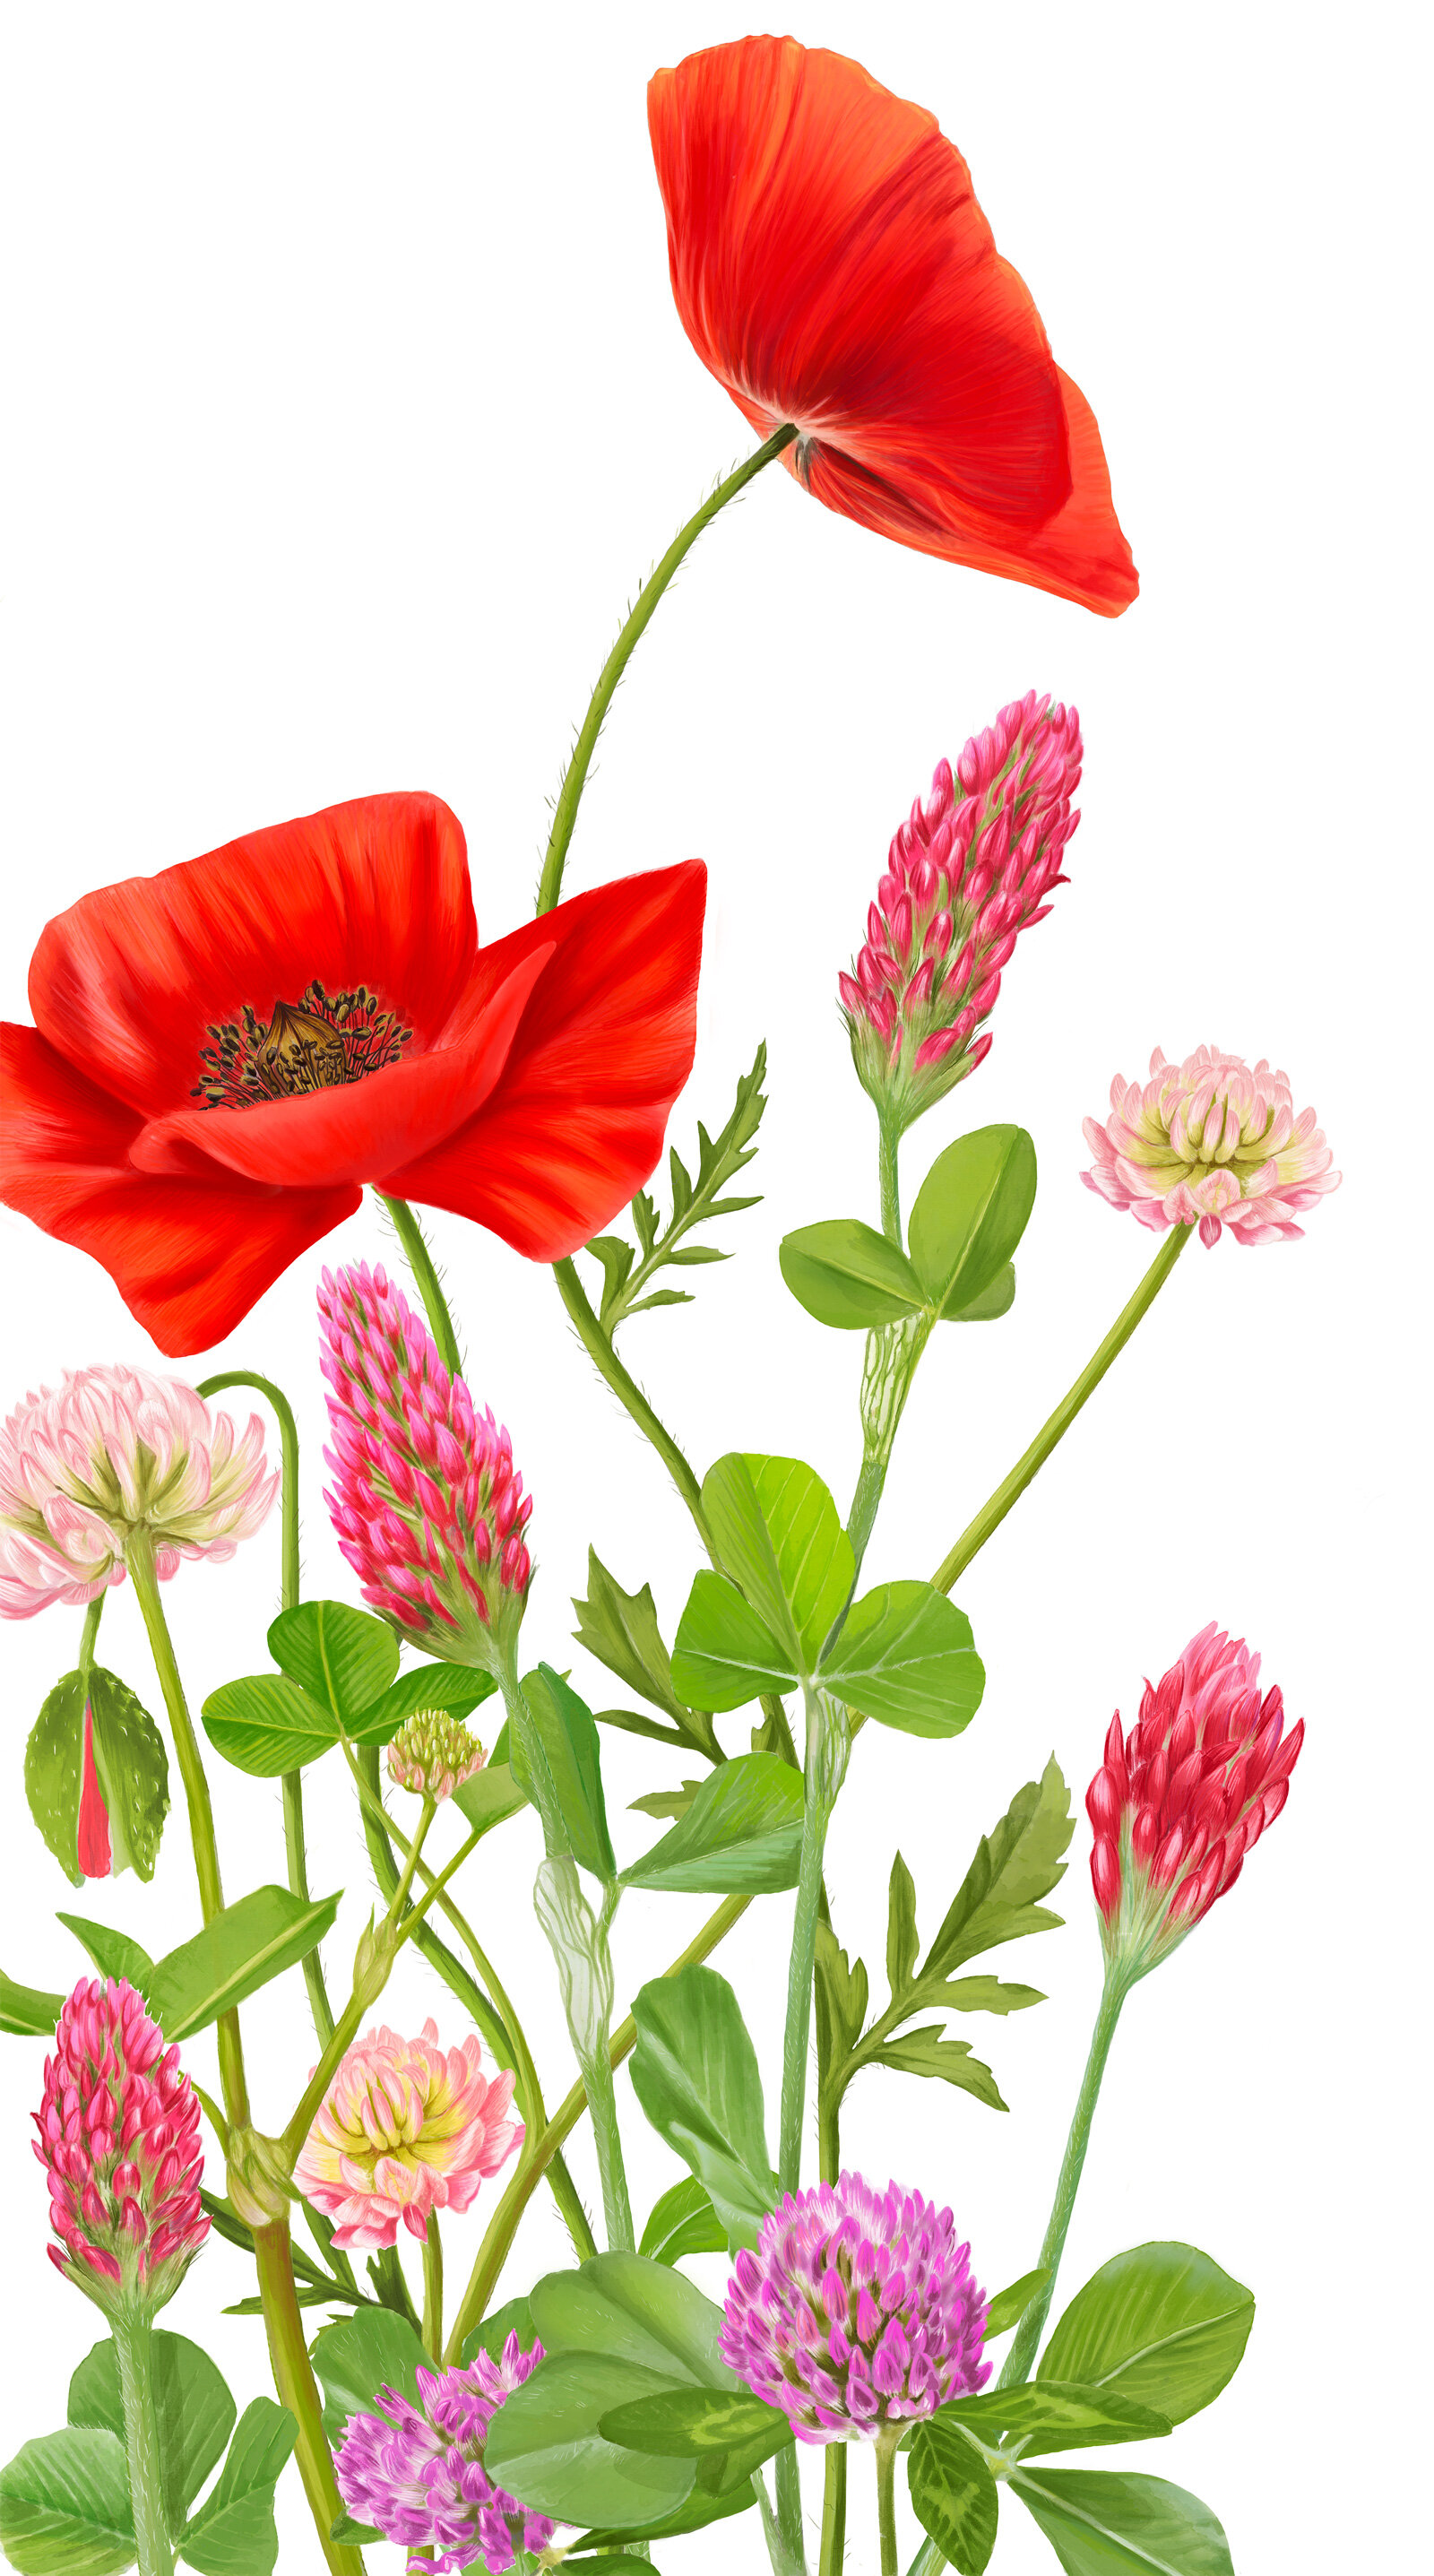 oculus-illustration-pflanzenillustration-hauert-verpackungsdesign-wildblumen-3